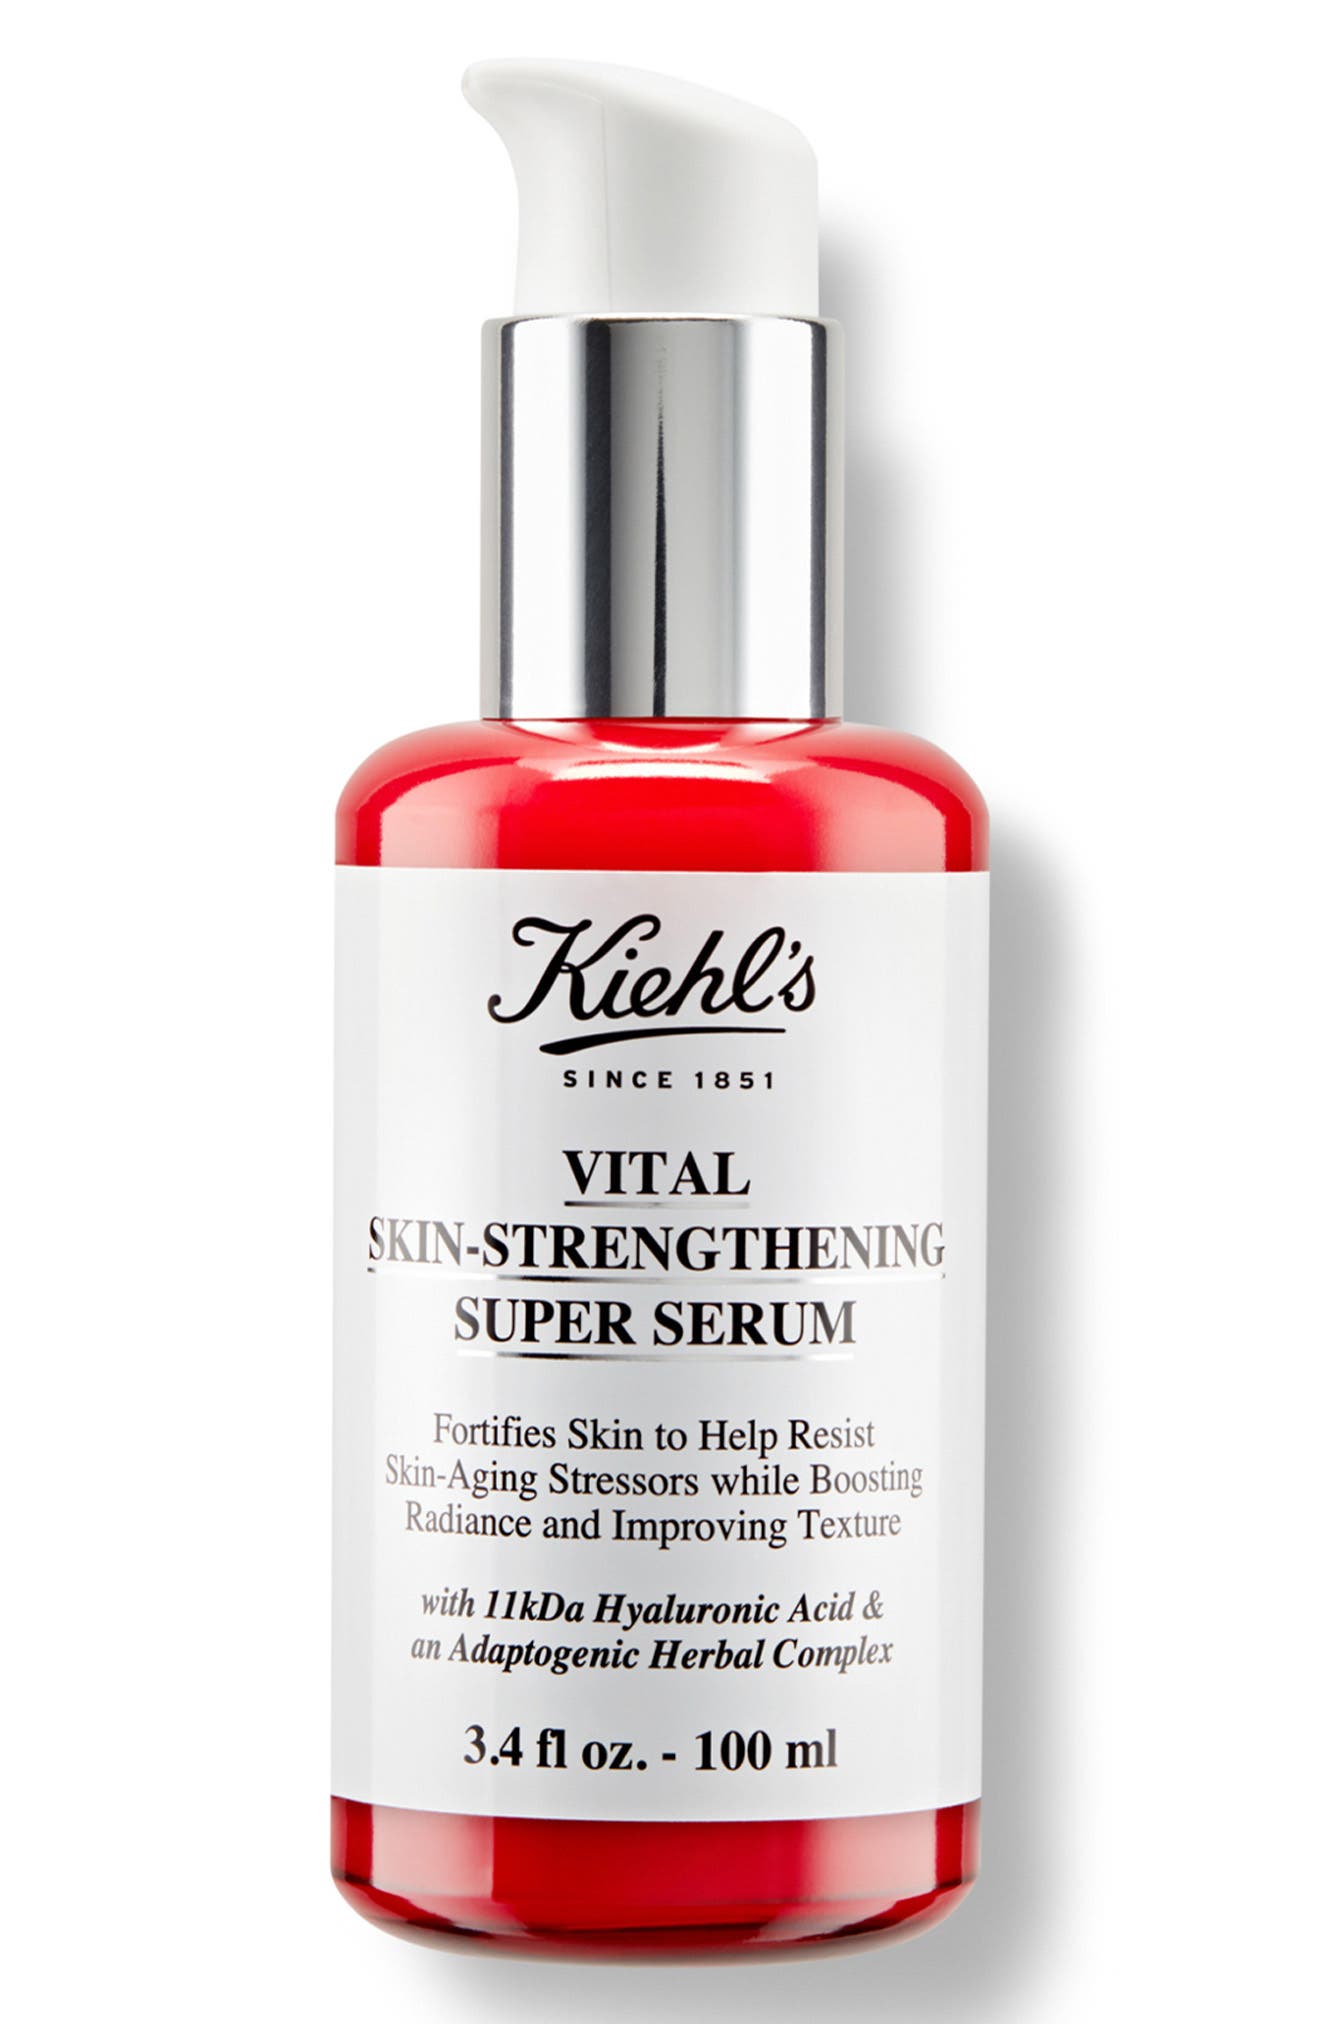 Kiehl's キールズ SP セラム 100ml 化粧品 コスメ VITAL SKIN-STRENGTHENING SUPER SERUM KIEHL’S 新品 未使用